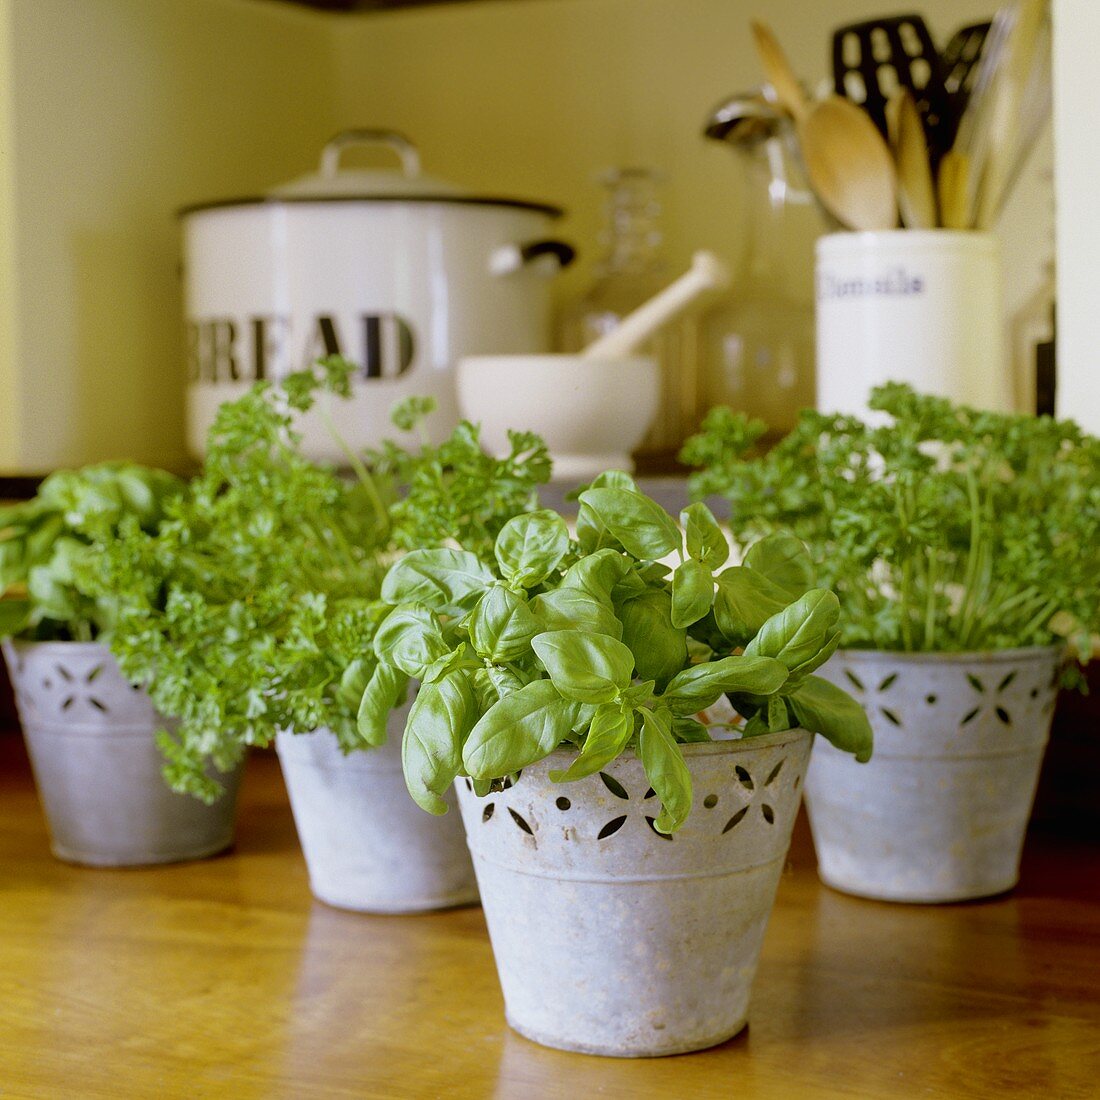 Assorted herbs in pot